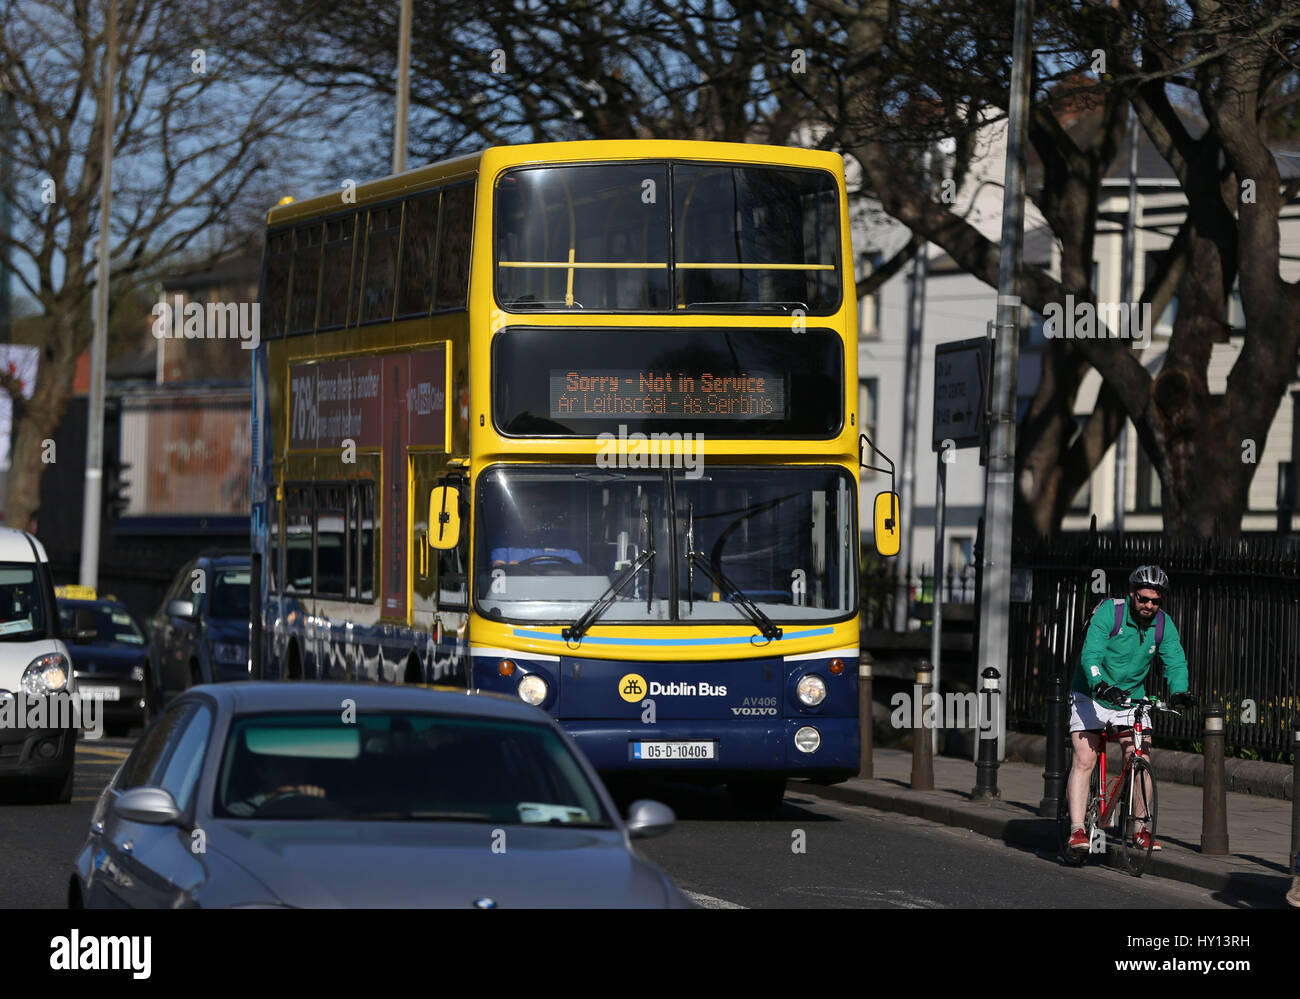 Out of Service Dublin Bus im Stau in Dublin, als Pendler konfrontiert Reisen Störung in ganz Irland nach dem Bus Eireann strike Ausbreitung auf andere Verkehrsmittel. Stockfoto